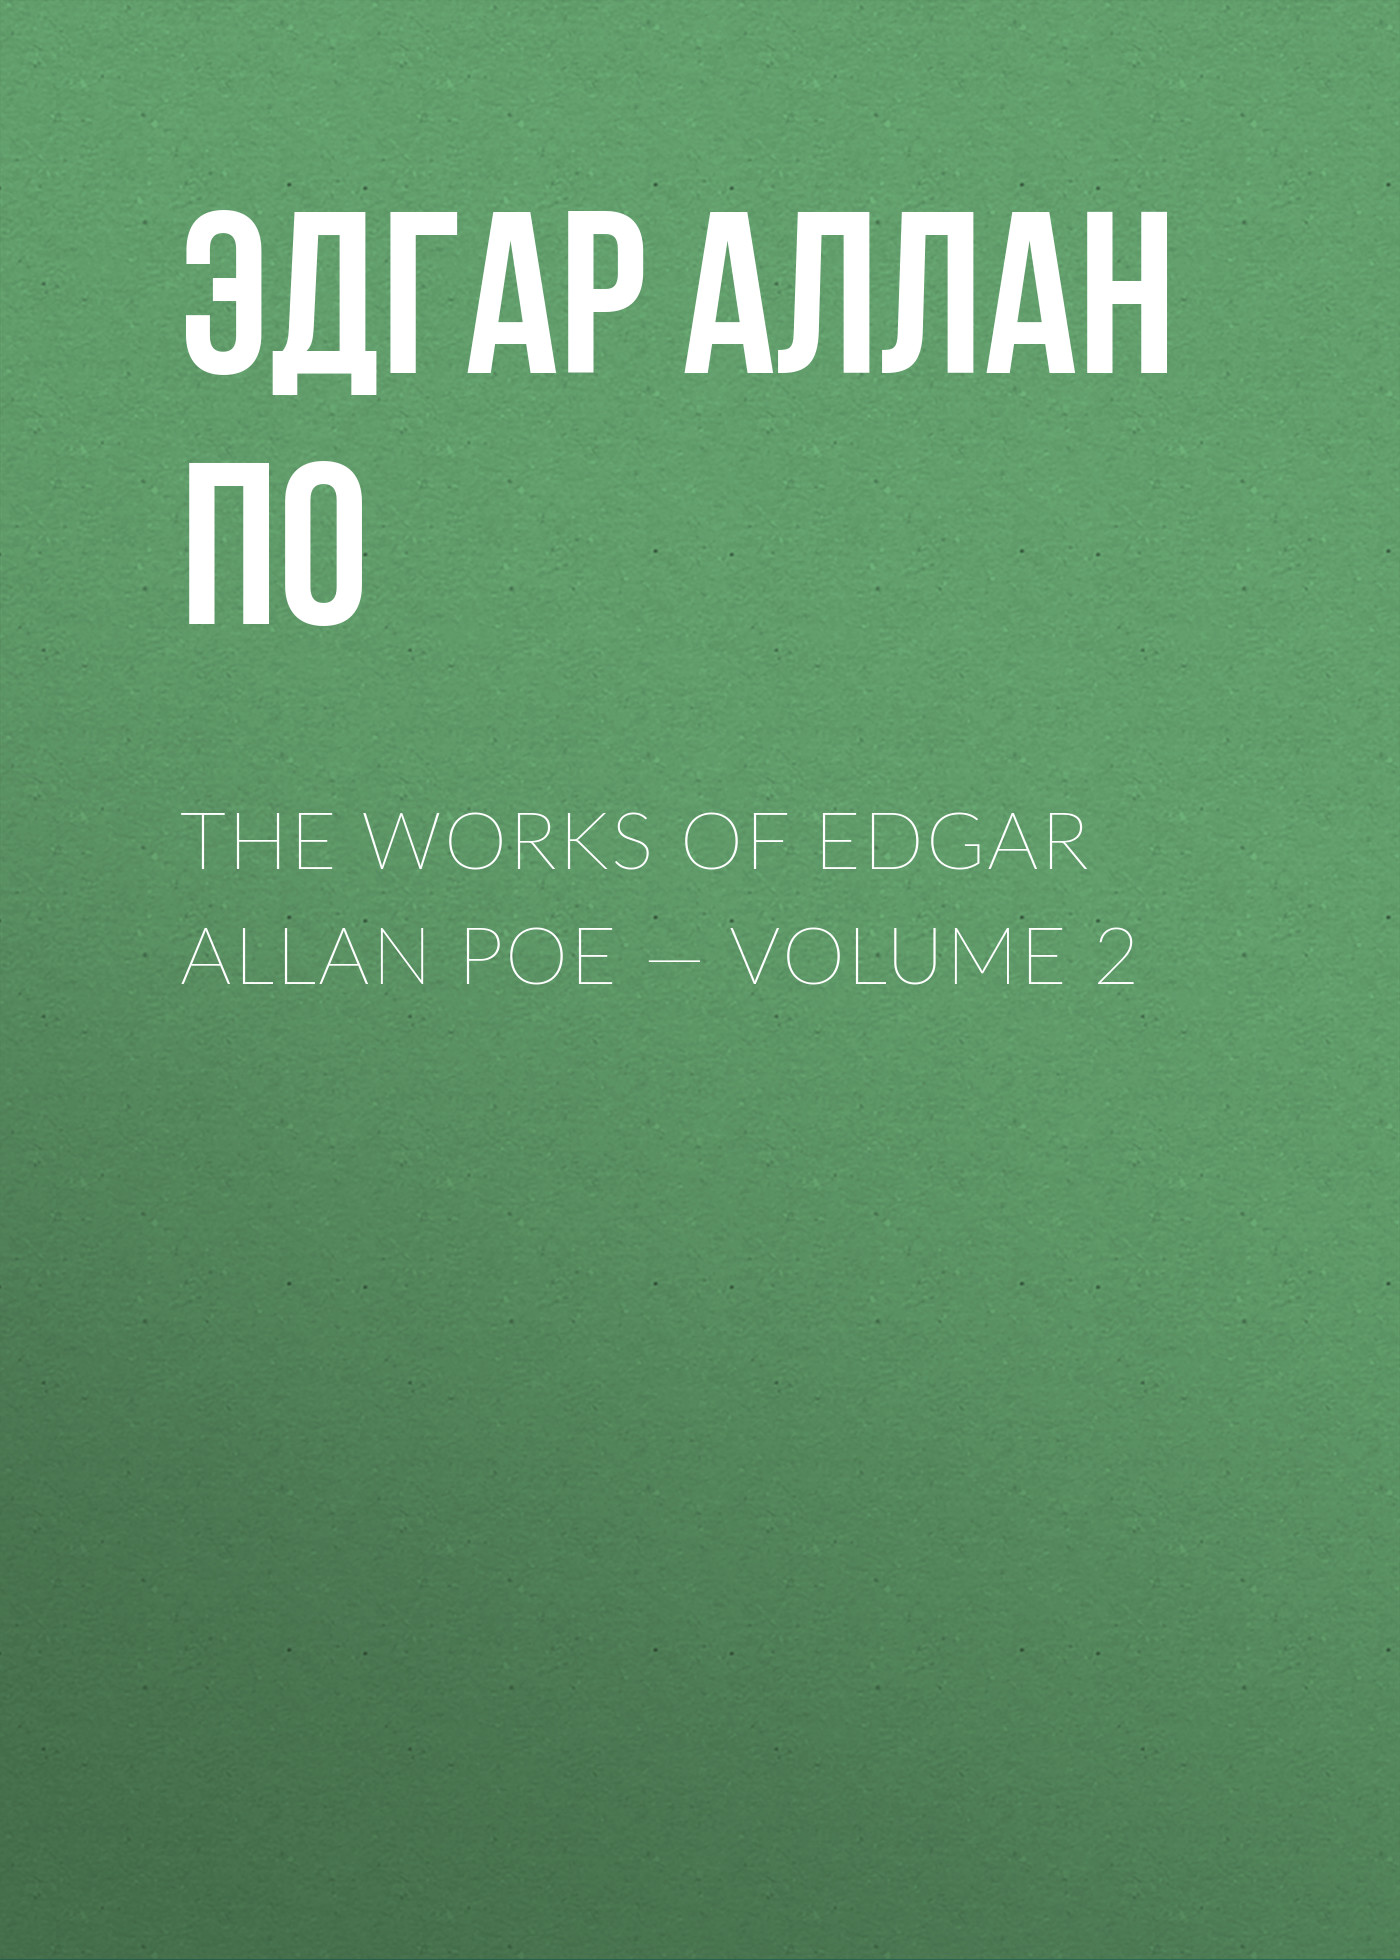 Книга The Works of Edgar Allan Poe – Volume 2 из серии , созданная Эдгар По, может относится к жанру Литература 19 века, Зарубежная старинная литература, Зарубежная классика. Стоимость электронной книги The Works of Edgar Allan Poe – Volume 2 с идентификатором 25291566 составляет 0 руб.